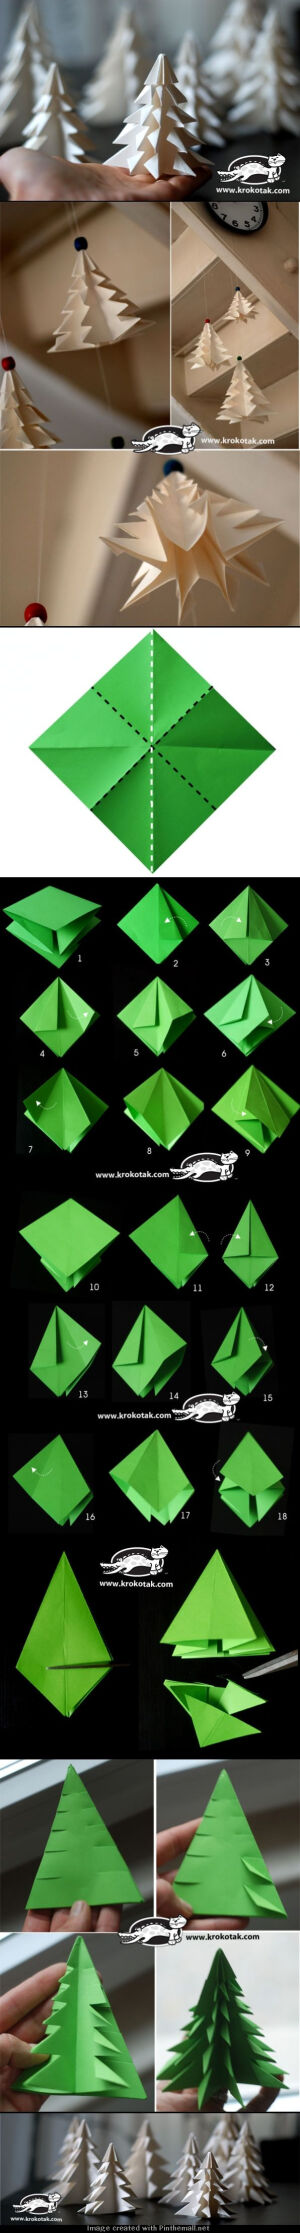 【聖誕企劃之折紙聖誕樹】利用色紙和剪刀，就可以做出相當應景的聖誕樹，簡單又不用花錢的好看裝飾品。來源http://krokotak.com/2013/11/fold-a-fir-tree/